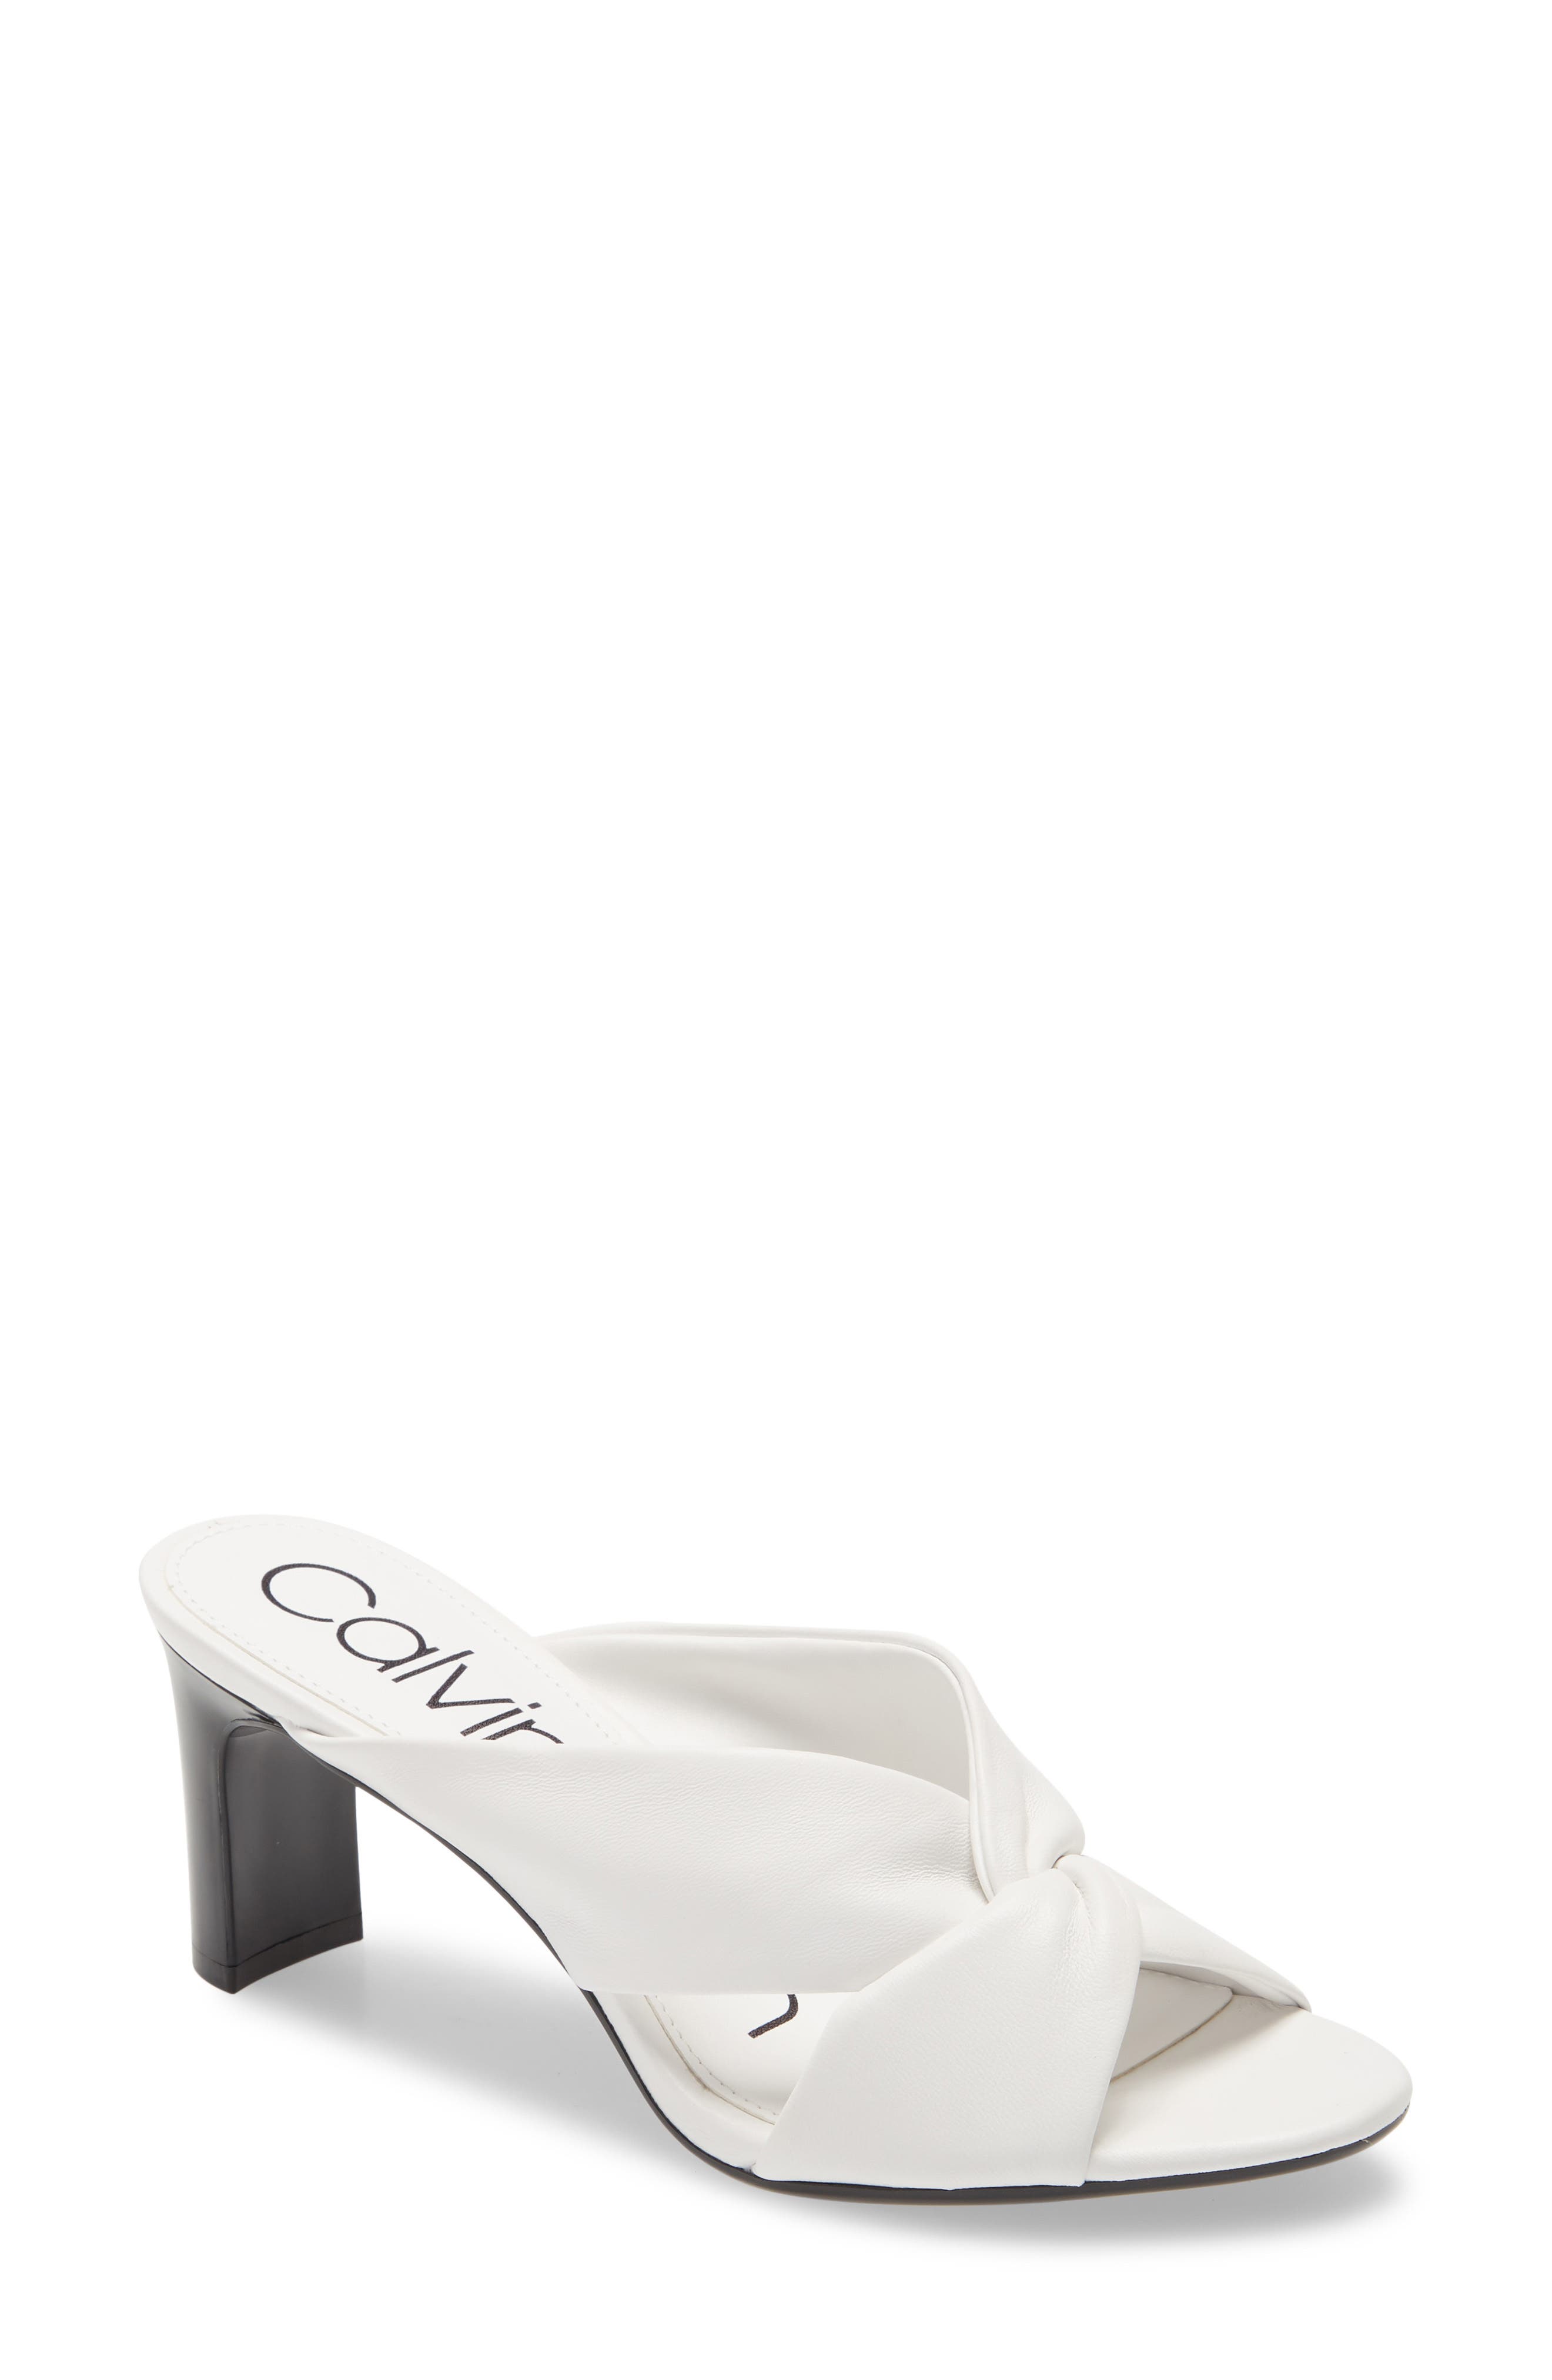 UPC 194060411231 product image for Women's Calvin Klein Omarion Sandal, Size 5.5 M - White | upcitemdb.com